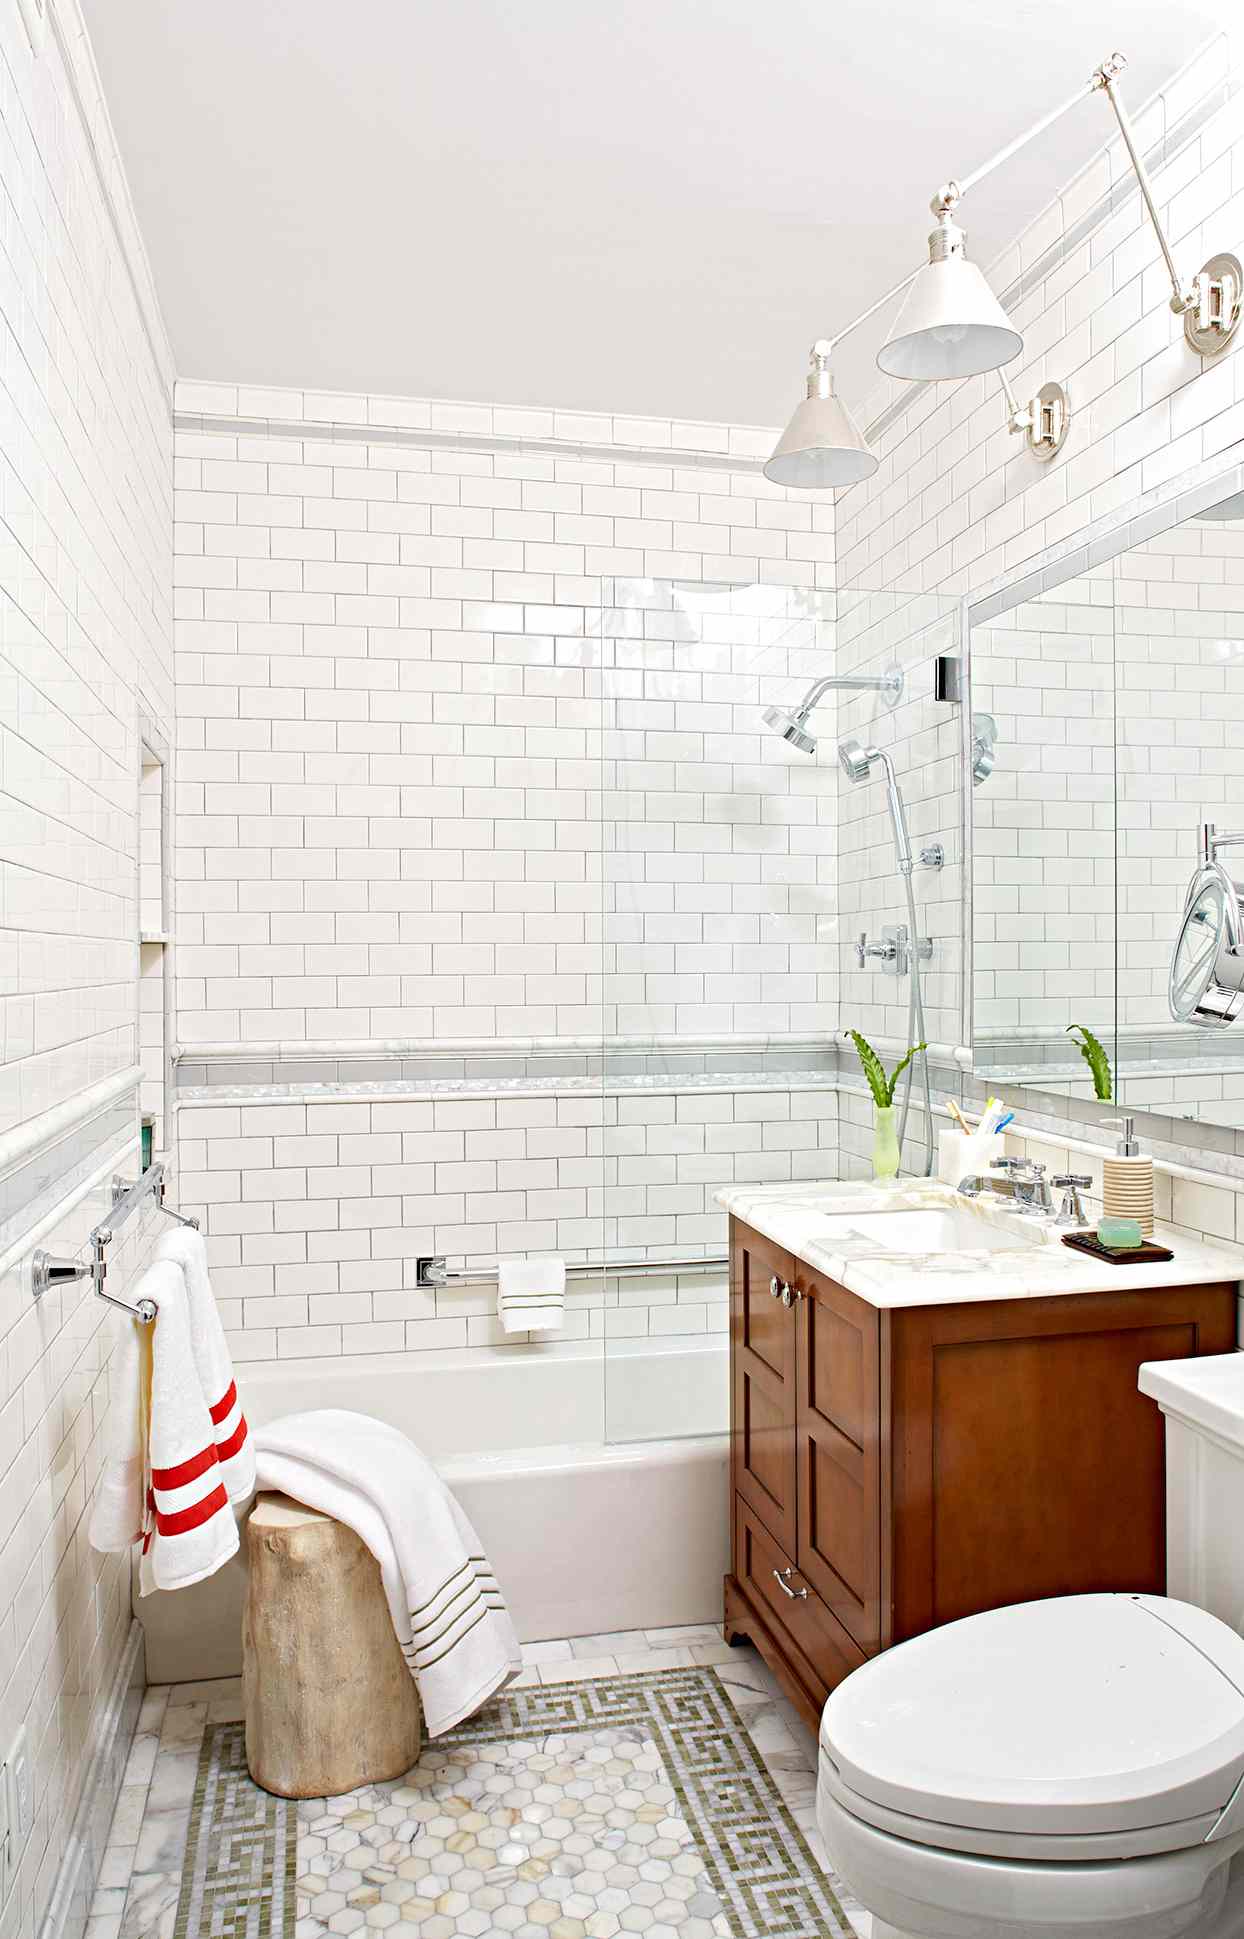 Tile A Shower Enclosure Or Tub Surround, Bath Tub Tile Surround Ideas